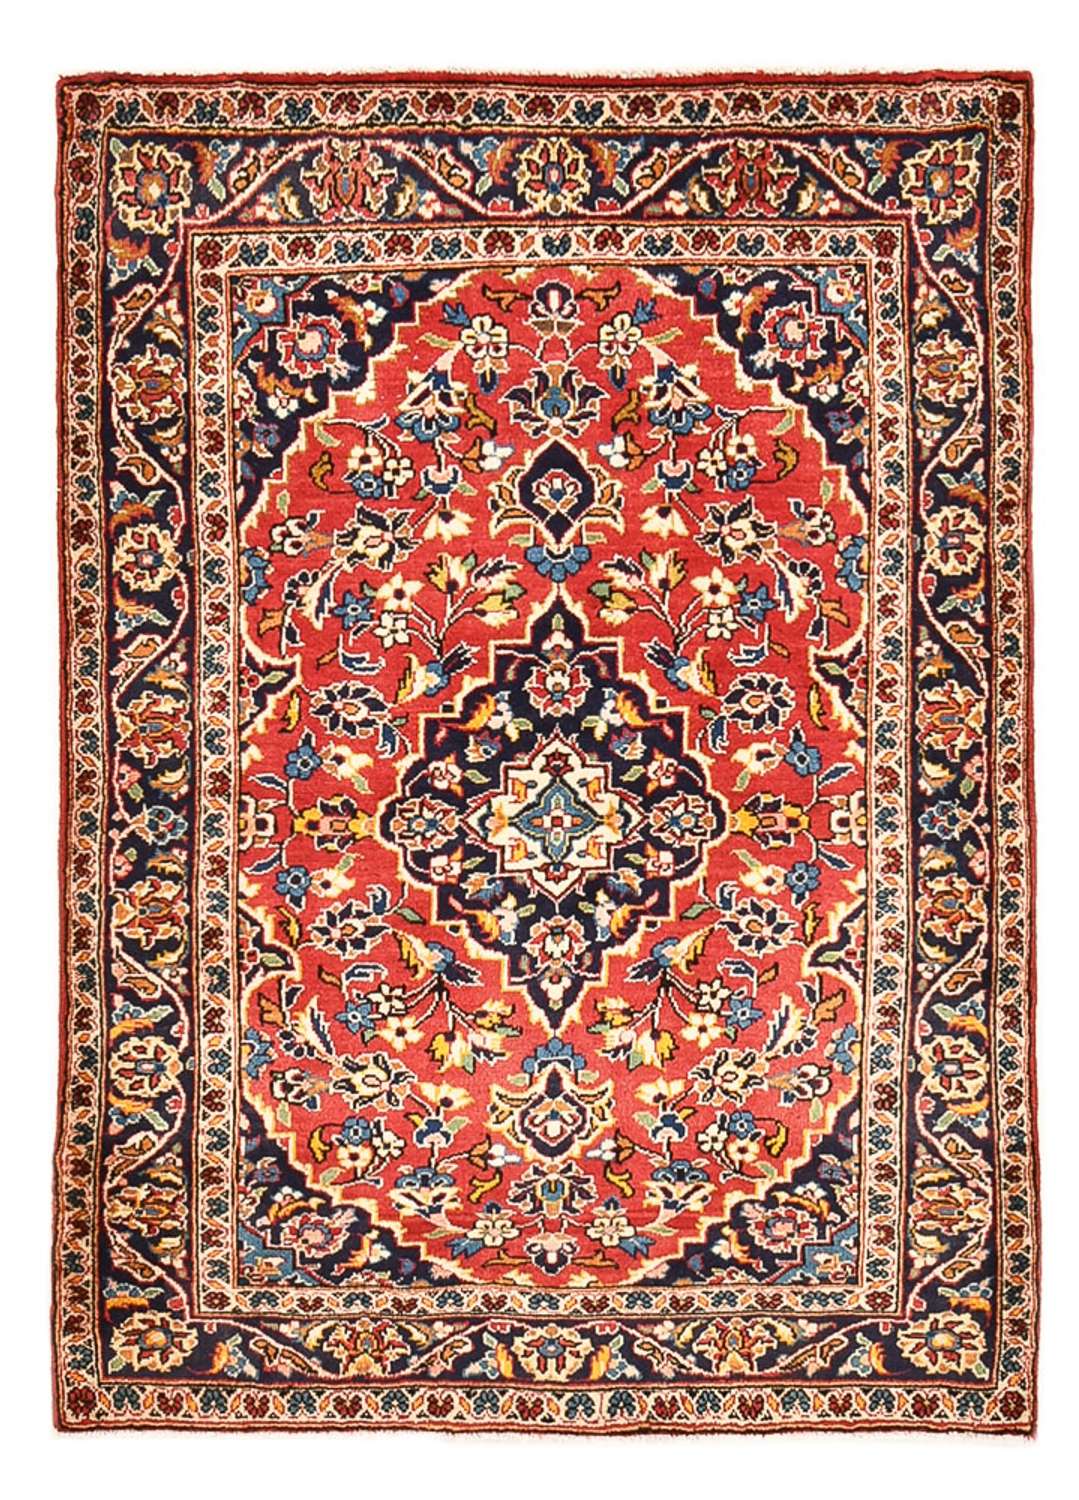 Dywan perski - Keshan - 142 x 100 cm - czerwony